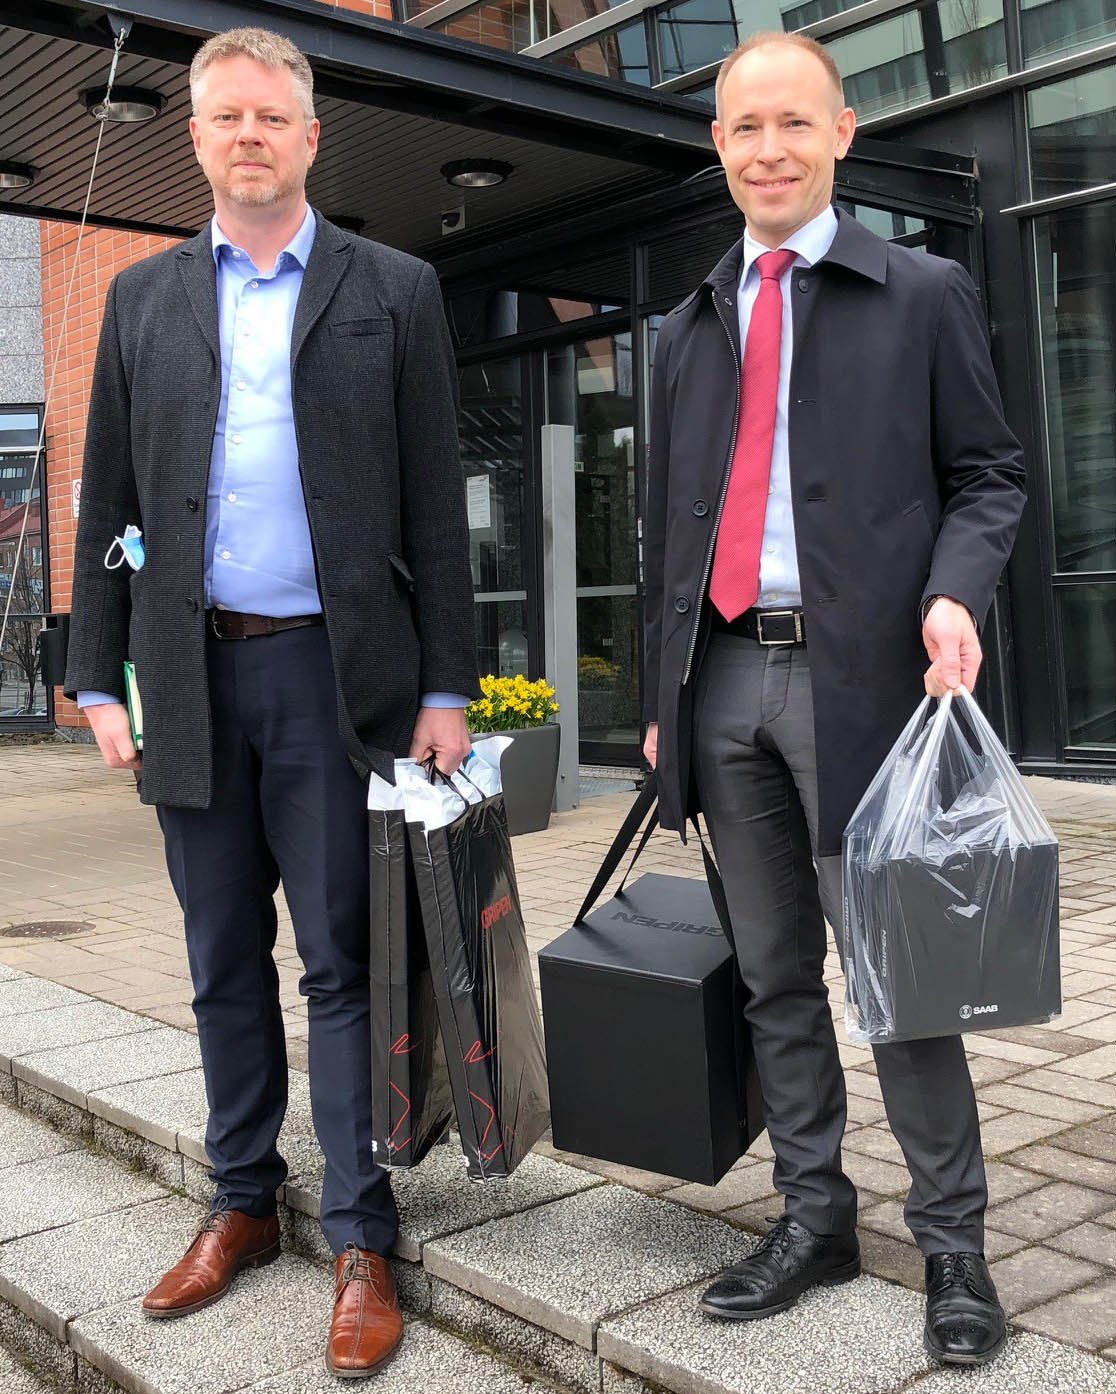 FMV:s projektledare Marcus Hallberg och Saabs kampanjledare Magnus Skogberg strax före överlämningen av offerten till finländska försvarsmaktens logistikverk i Tammerfors.